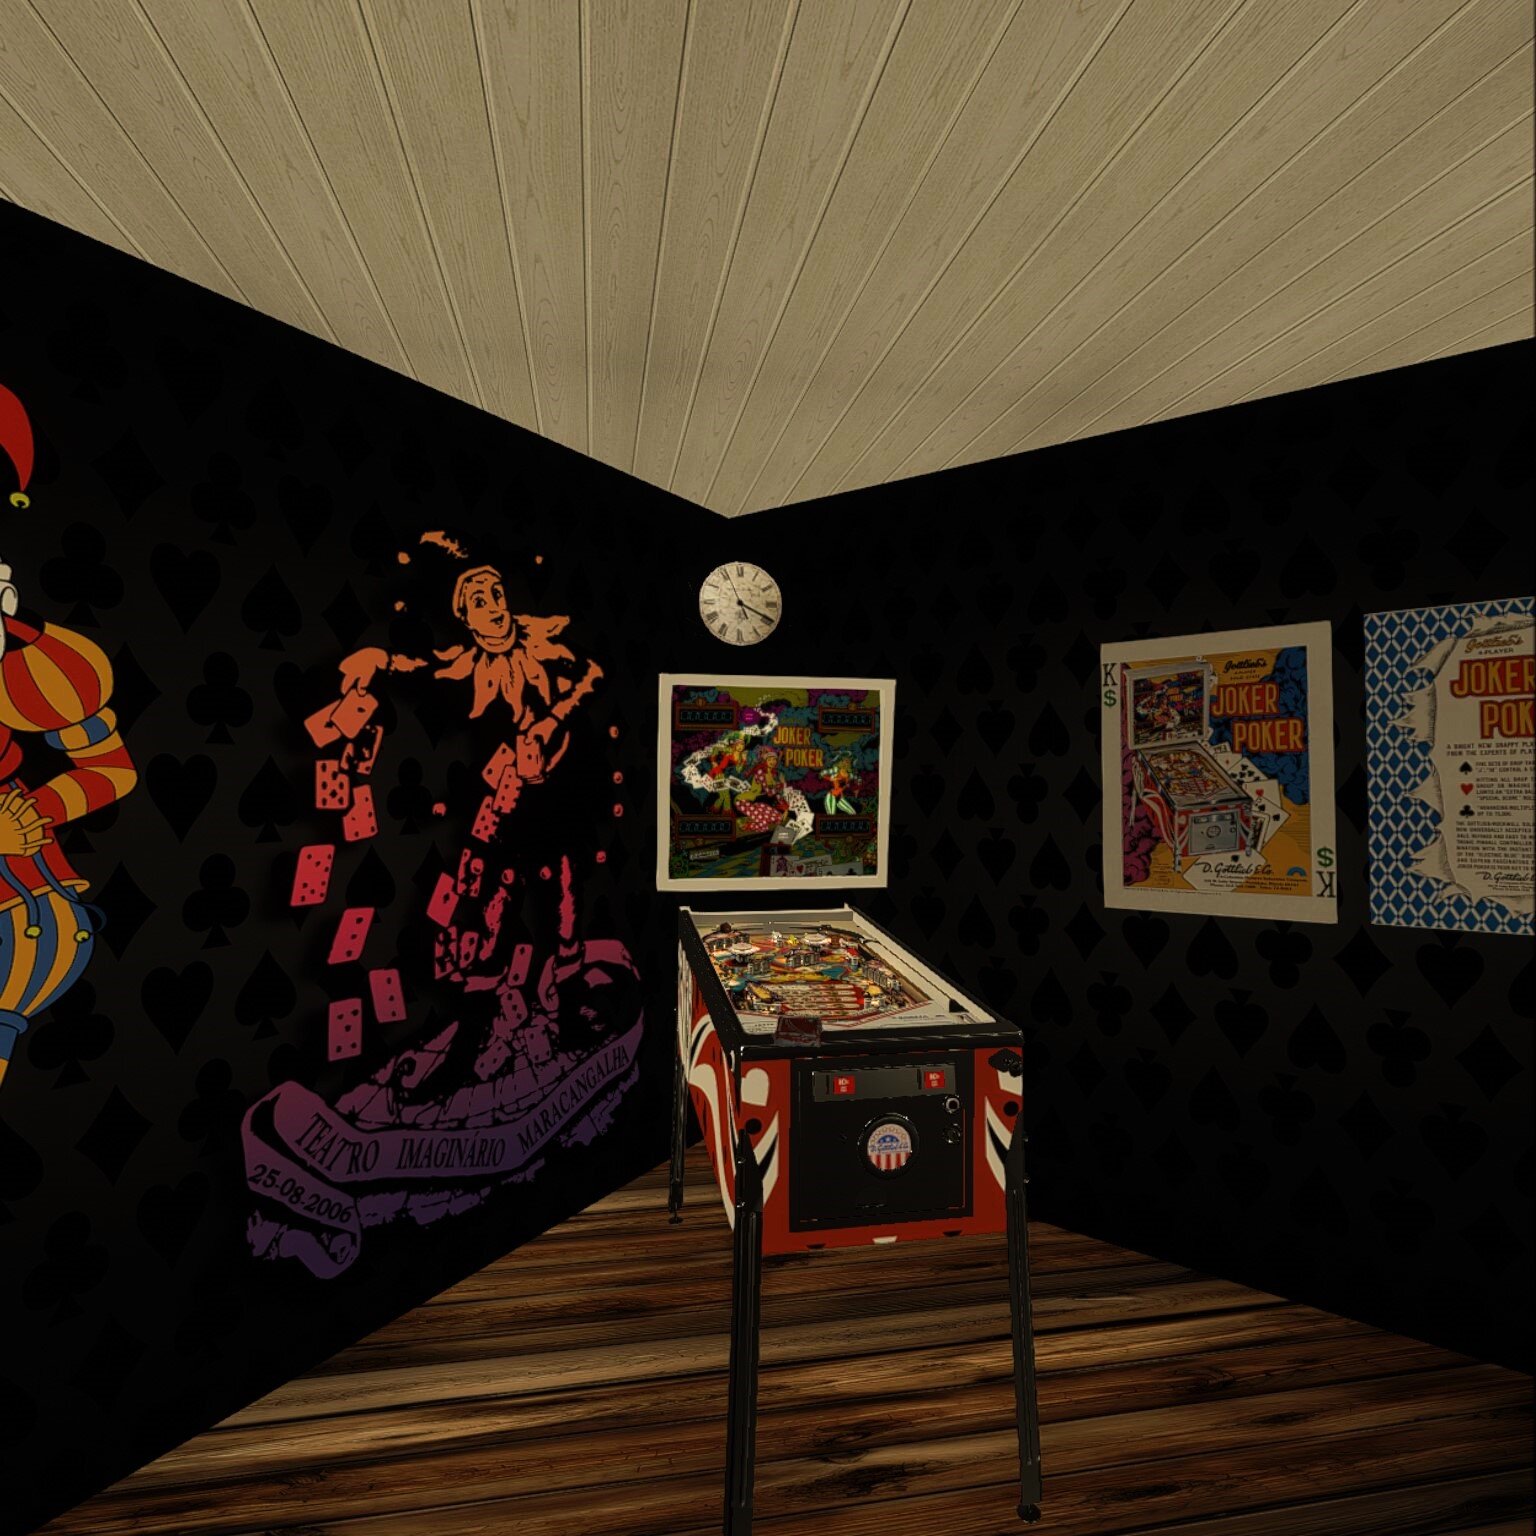 Joker Poker (Gottlieb 1978)_VR Room_DarthVito